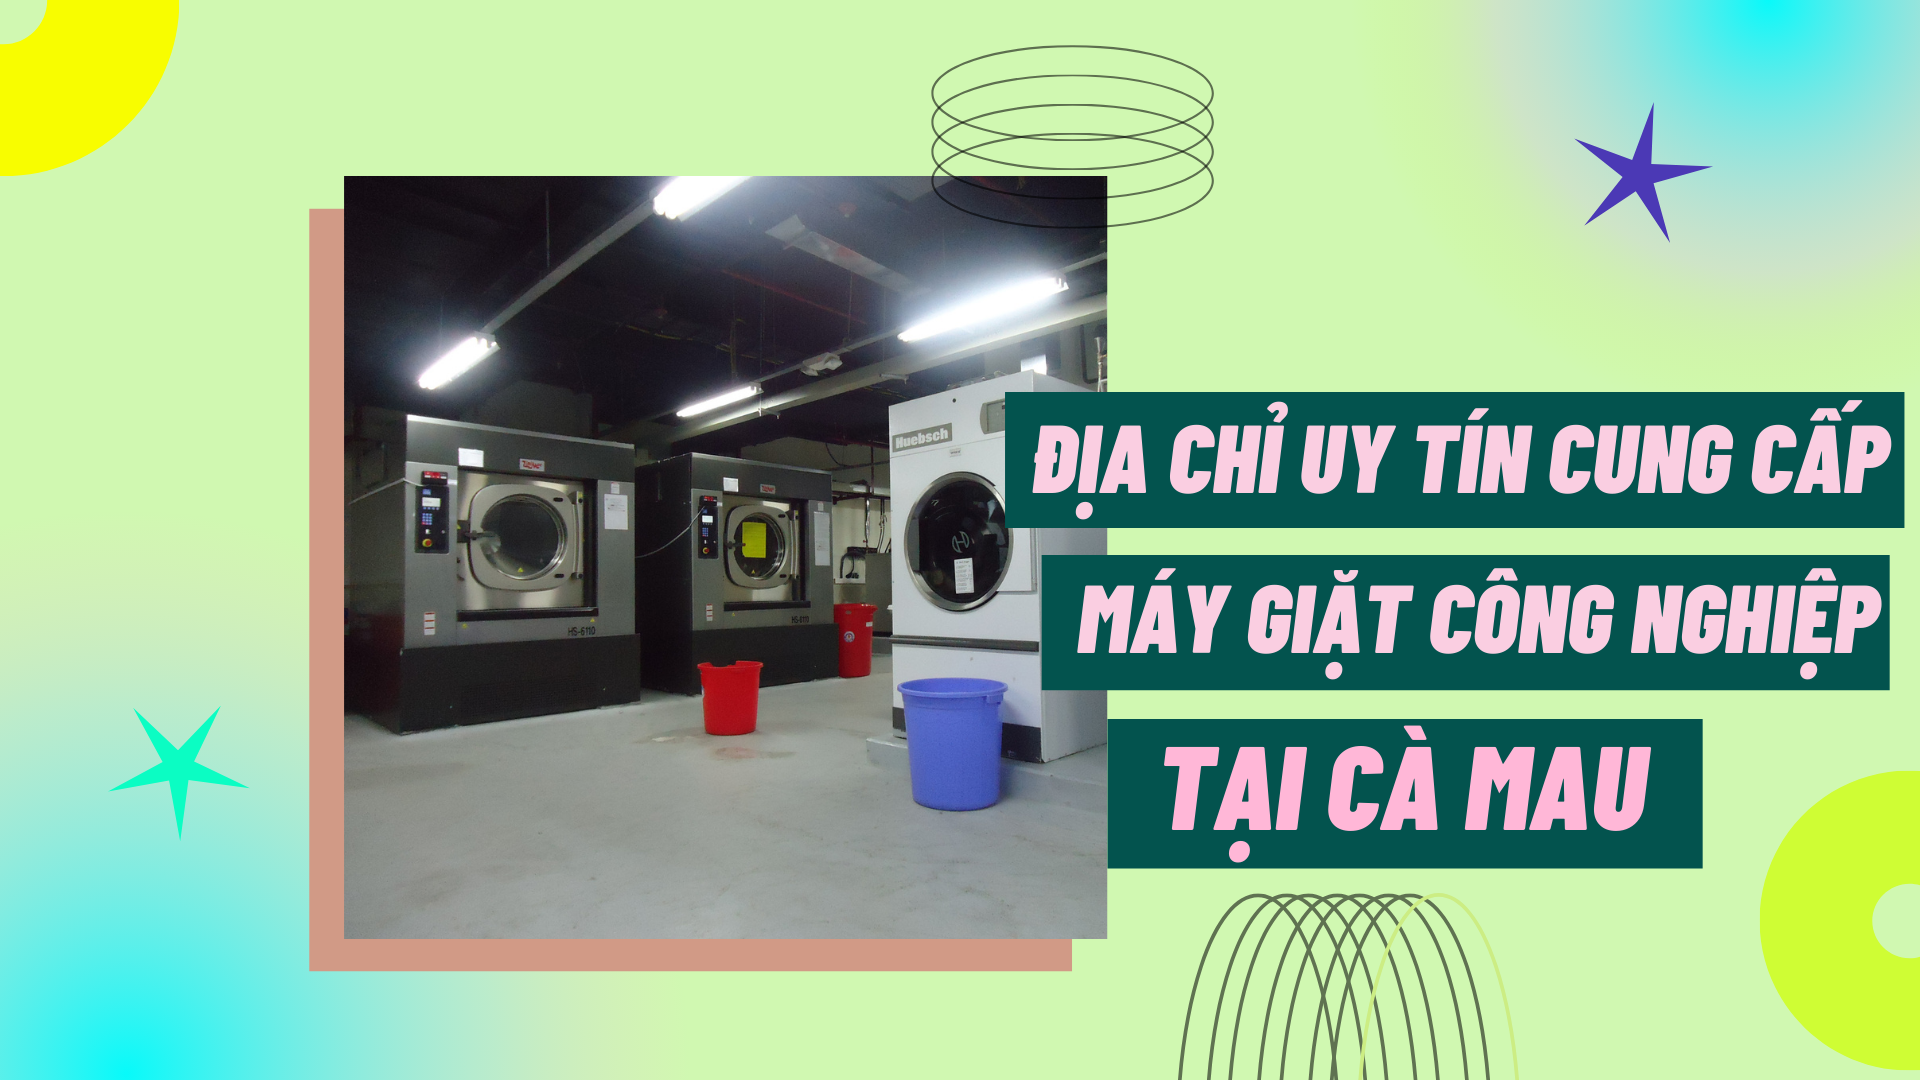 Địa chỉ uy tín cung cấp máy giặt công nghiệp tại Cà Mau